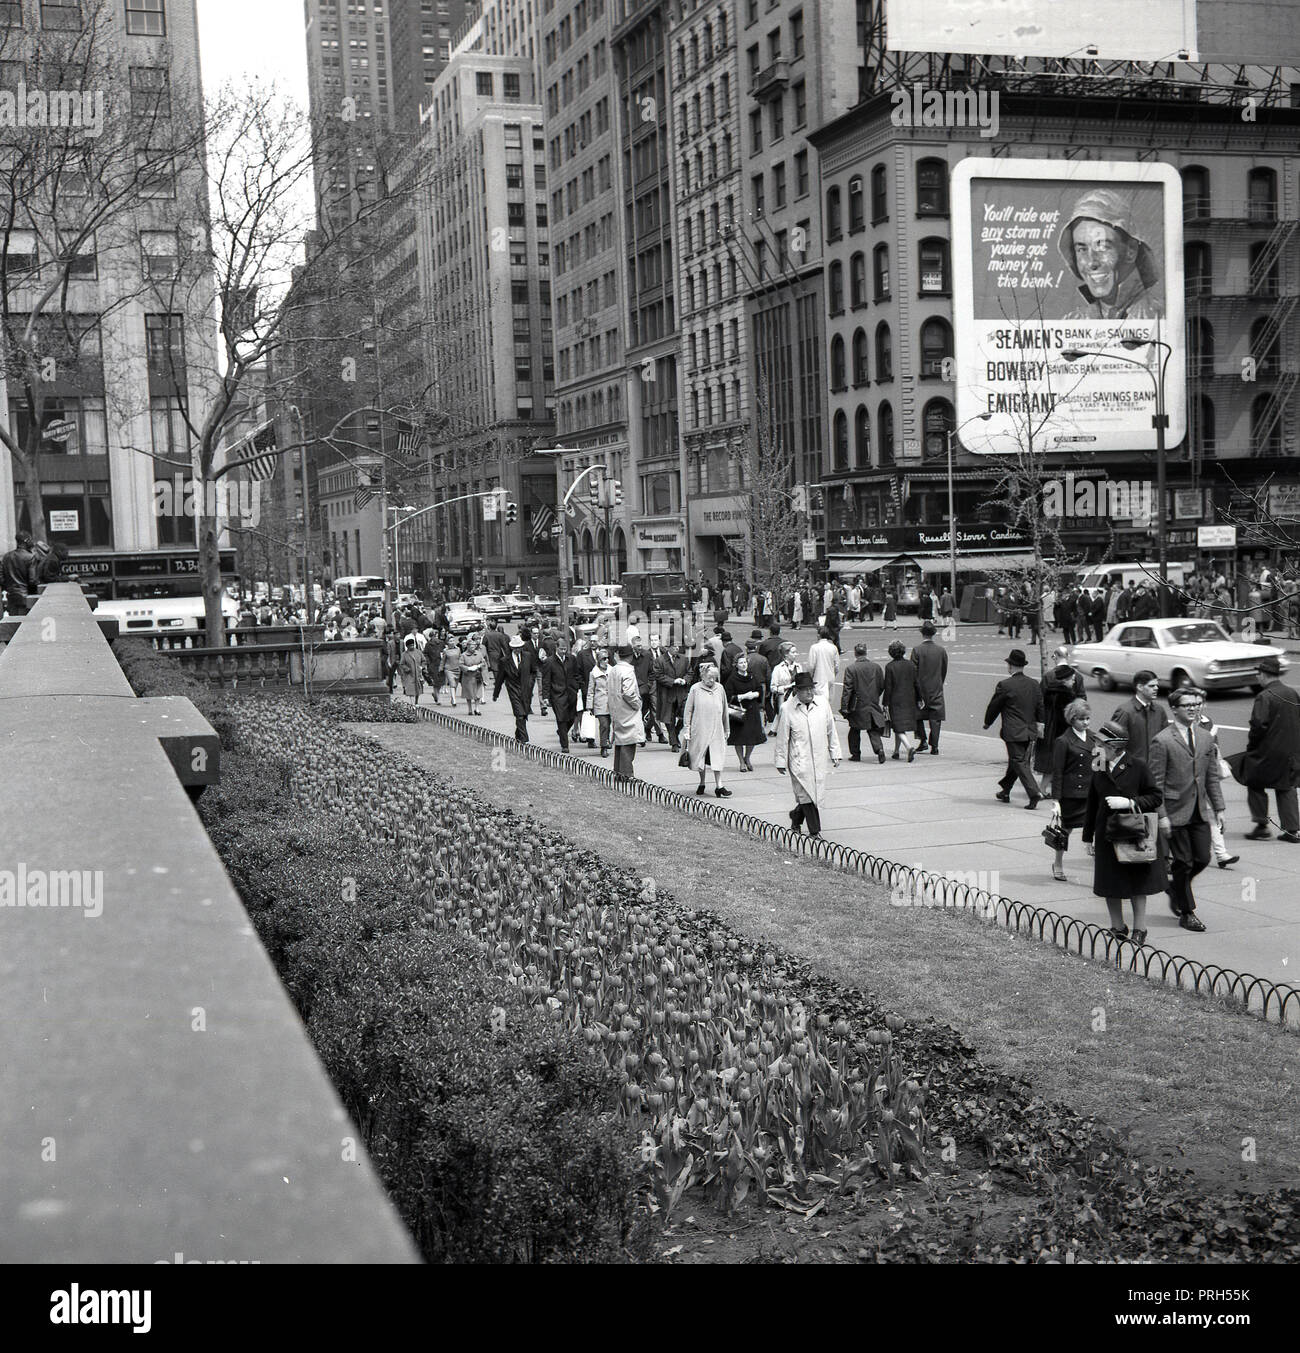 Anni sessanta, storico, immagine mostra i newyorkesi in financia o distretto bancario della città di New York, Wall Street, e un cartellone per noi tre casse di risparmio - il marinaio della banca per il risparmio, il Bowery risparmio bancario e industriale di emigrati risparmio bancario. Foto Stock